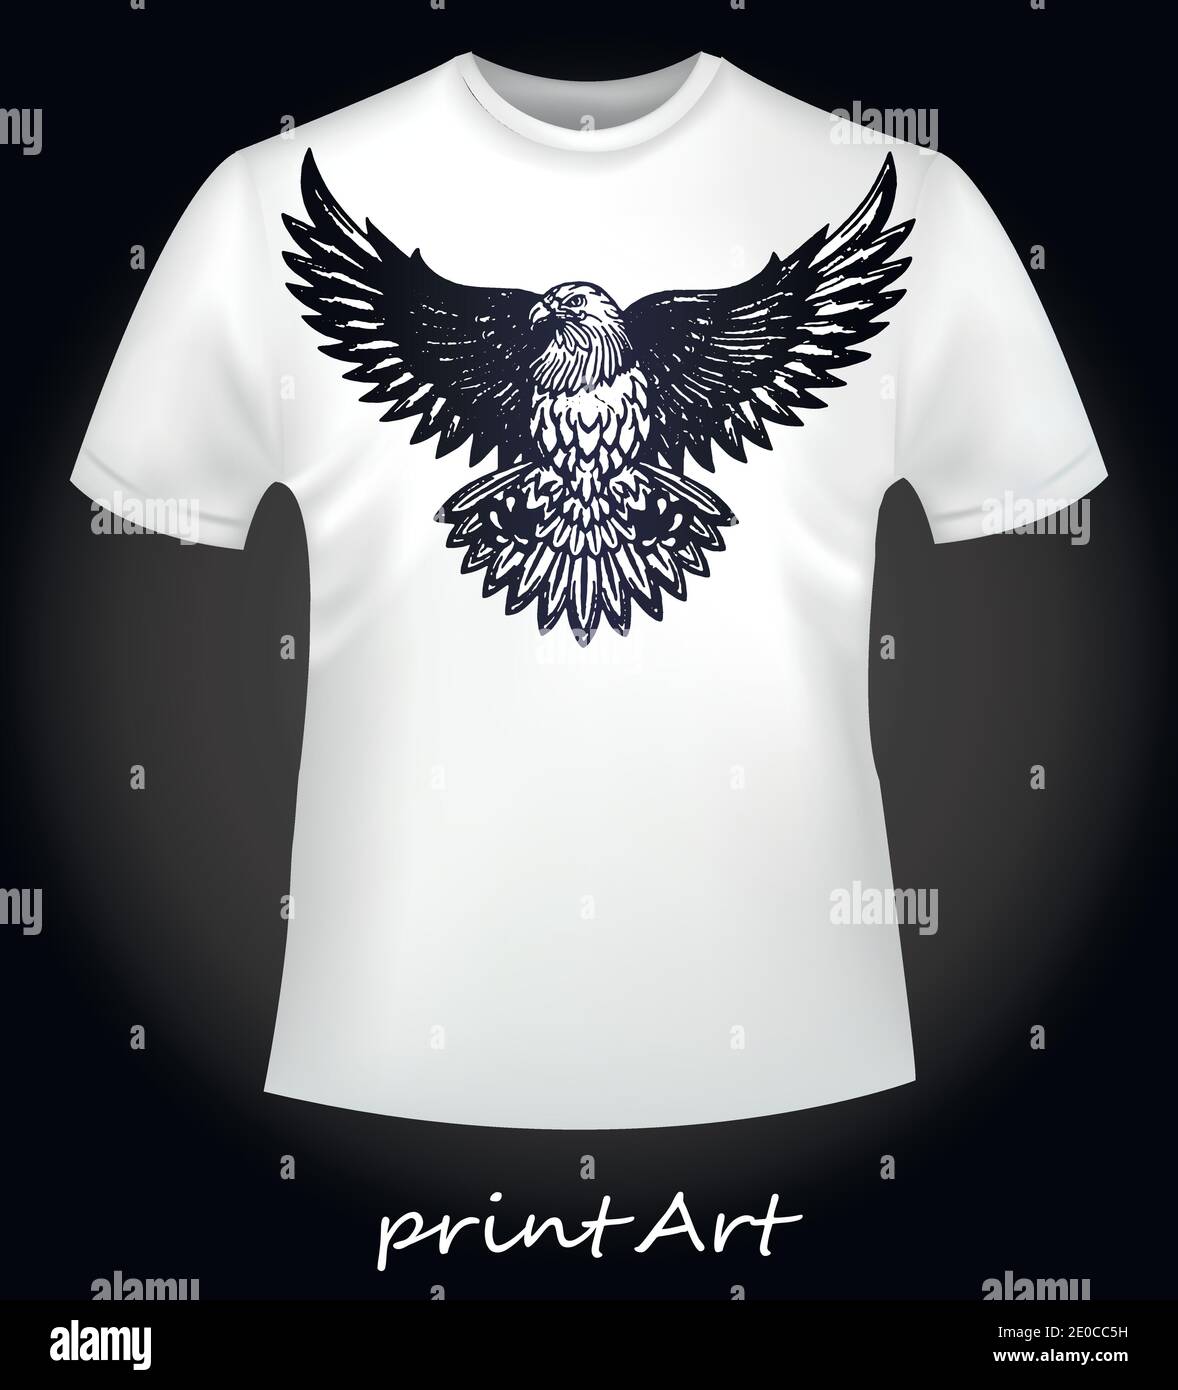 T-shirt blanc avec un oiseau de proie aigle Image Vectorielle Stock - Alamy